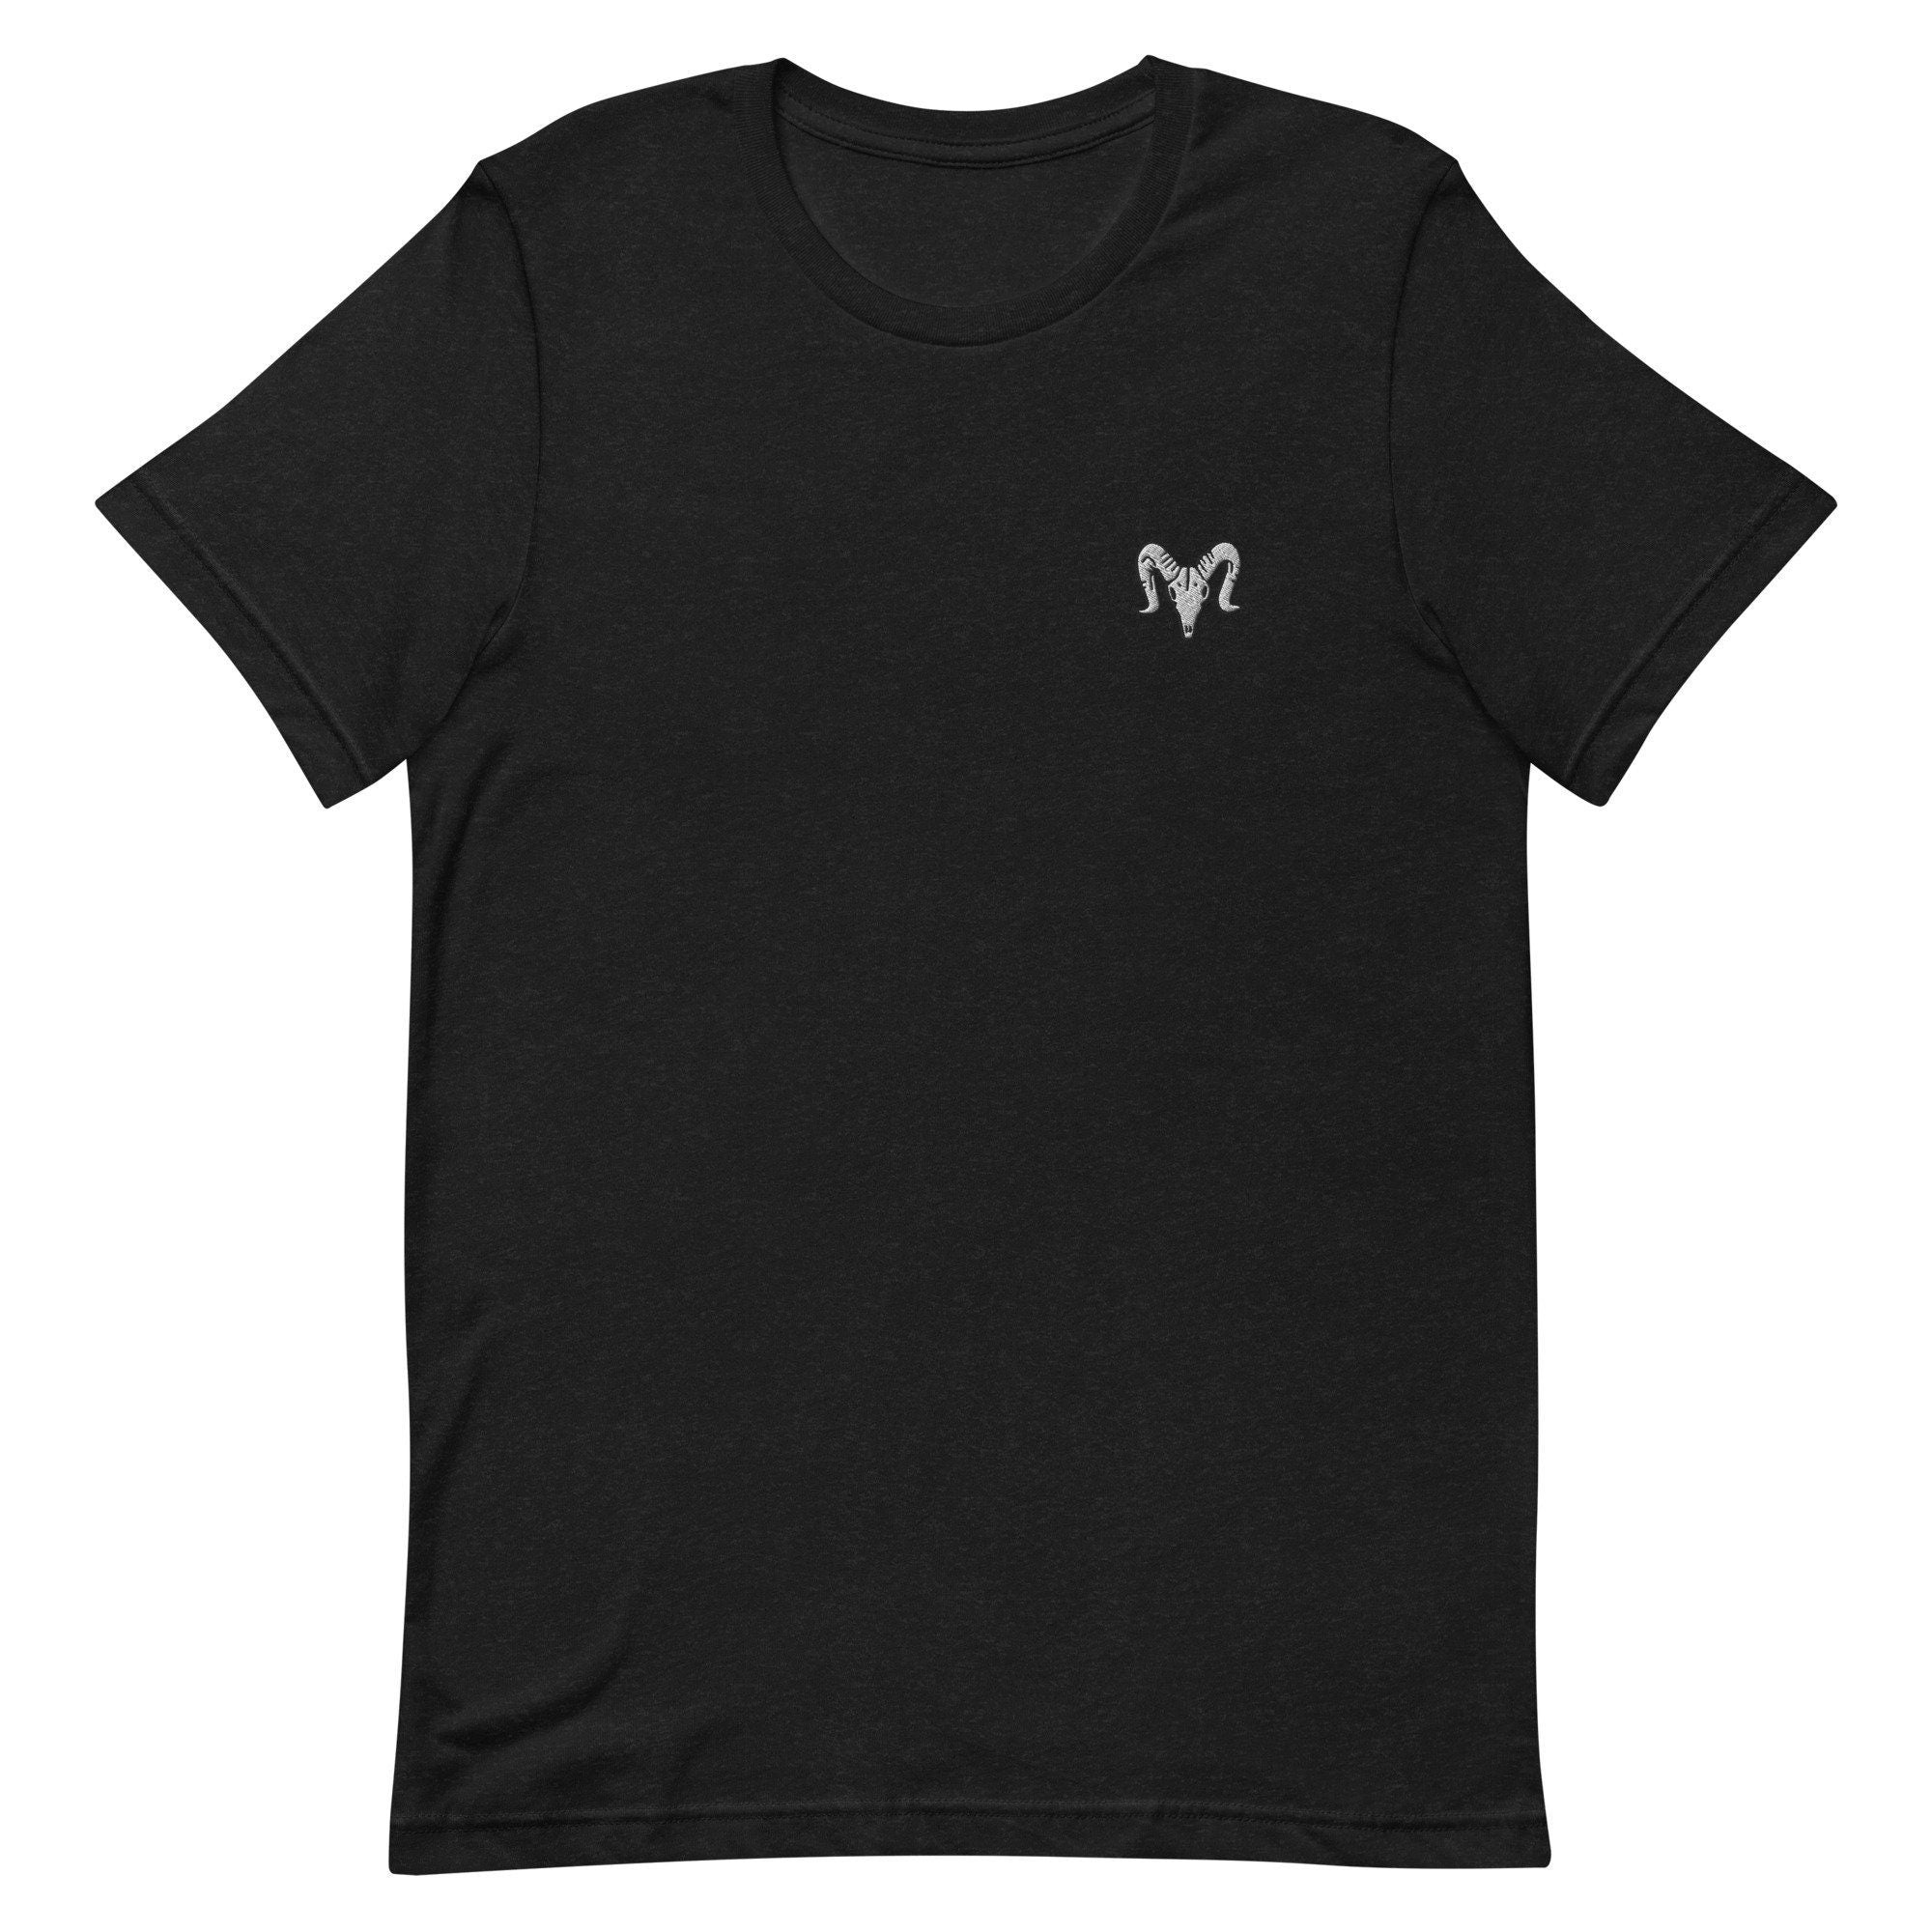 Sheep Skull Premium Men's T-Shirt, Embroidered Men's T-Shirt Gift for Boyfriend, Men's Short Sleeve Shirt - Multiple Colors